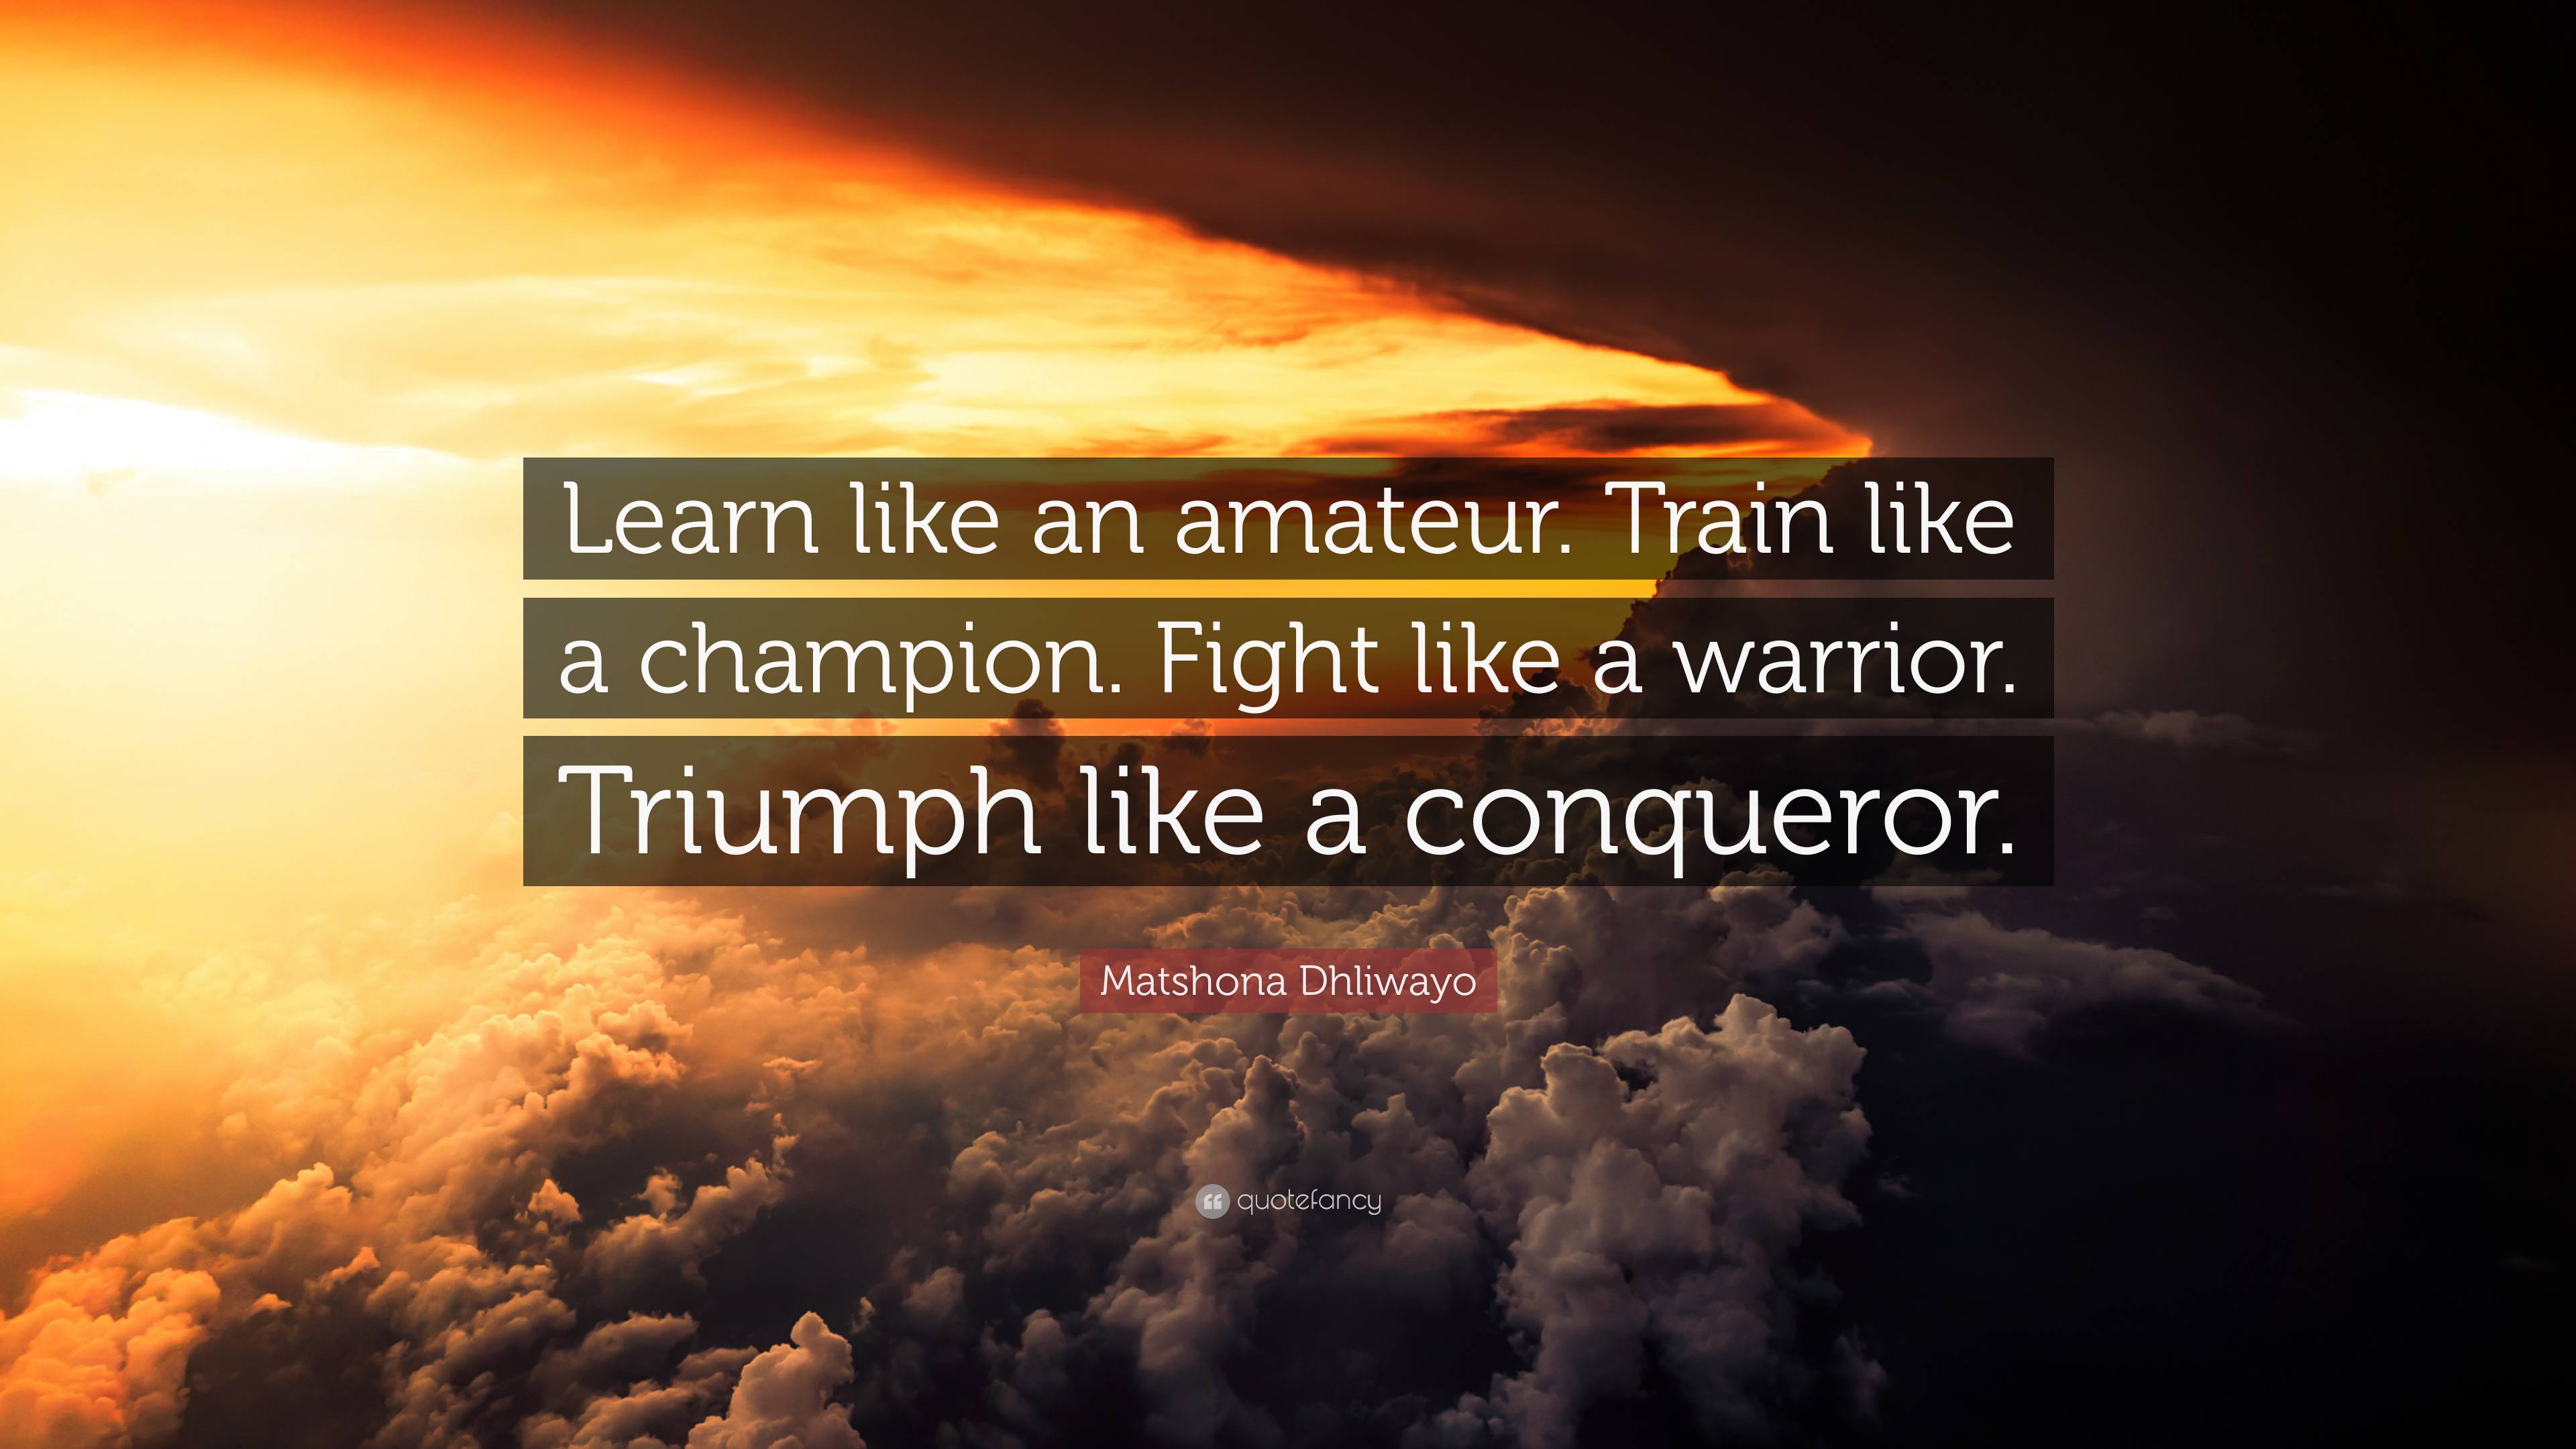 Matshona Dhliwayo Quote: “Learn like an amateur. Train like a